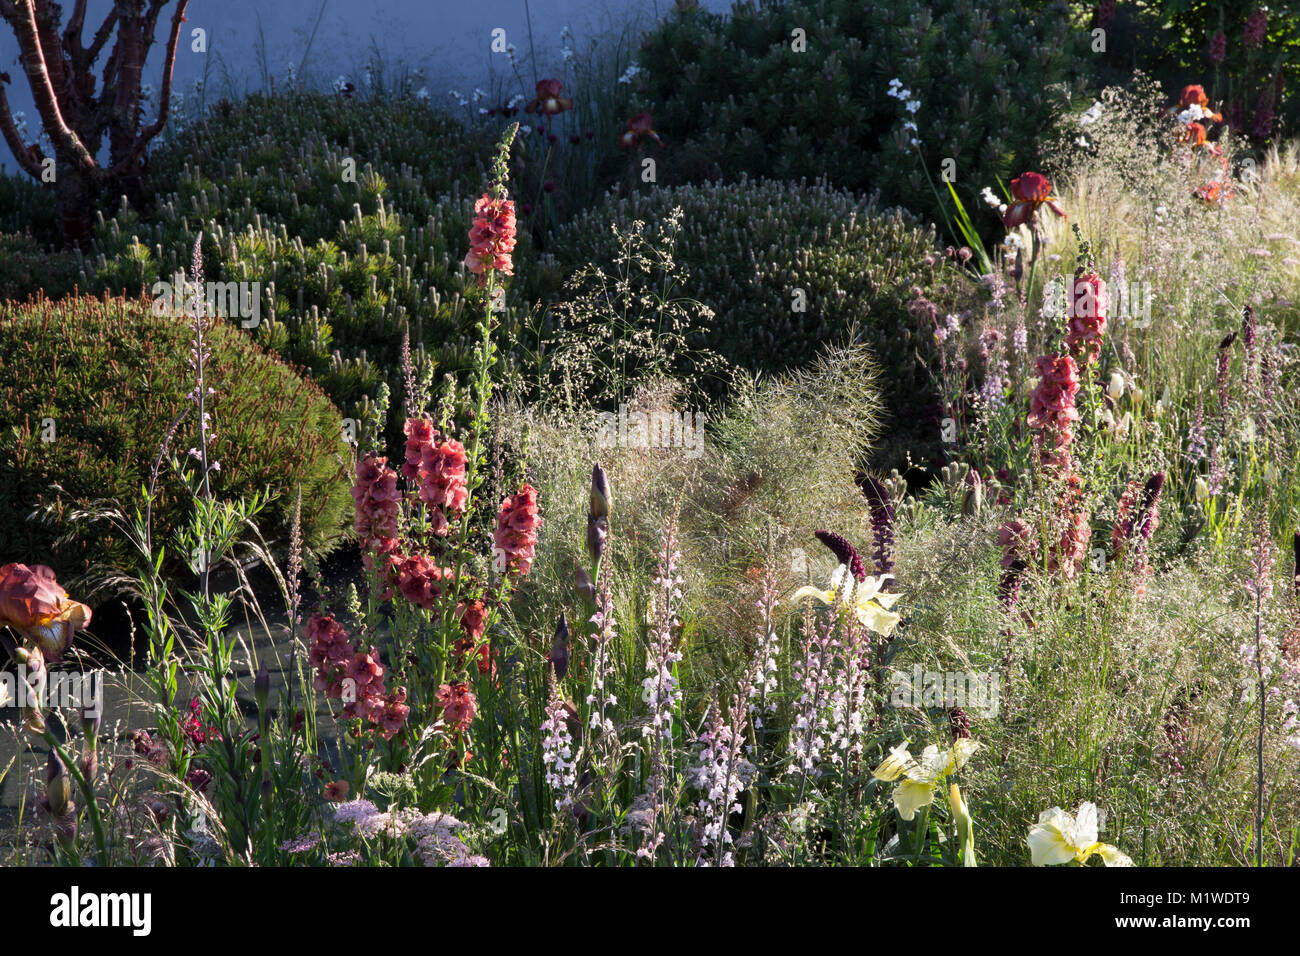 The BBC Radio 2 Jeremy Vine Texture Garden, RHS Chelsea Flower Show 2017 Stock Photo